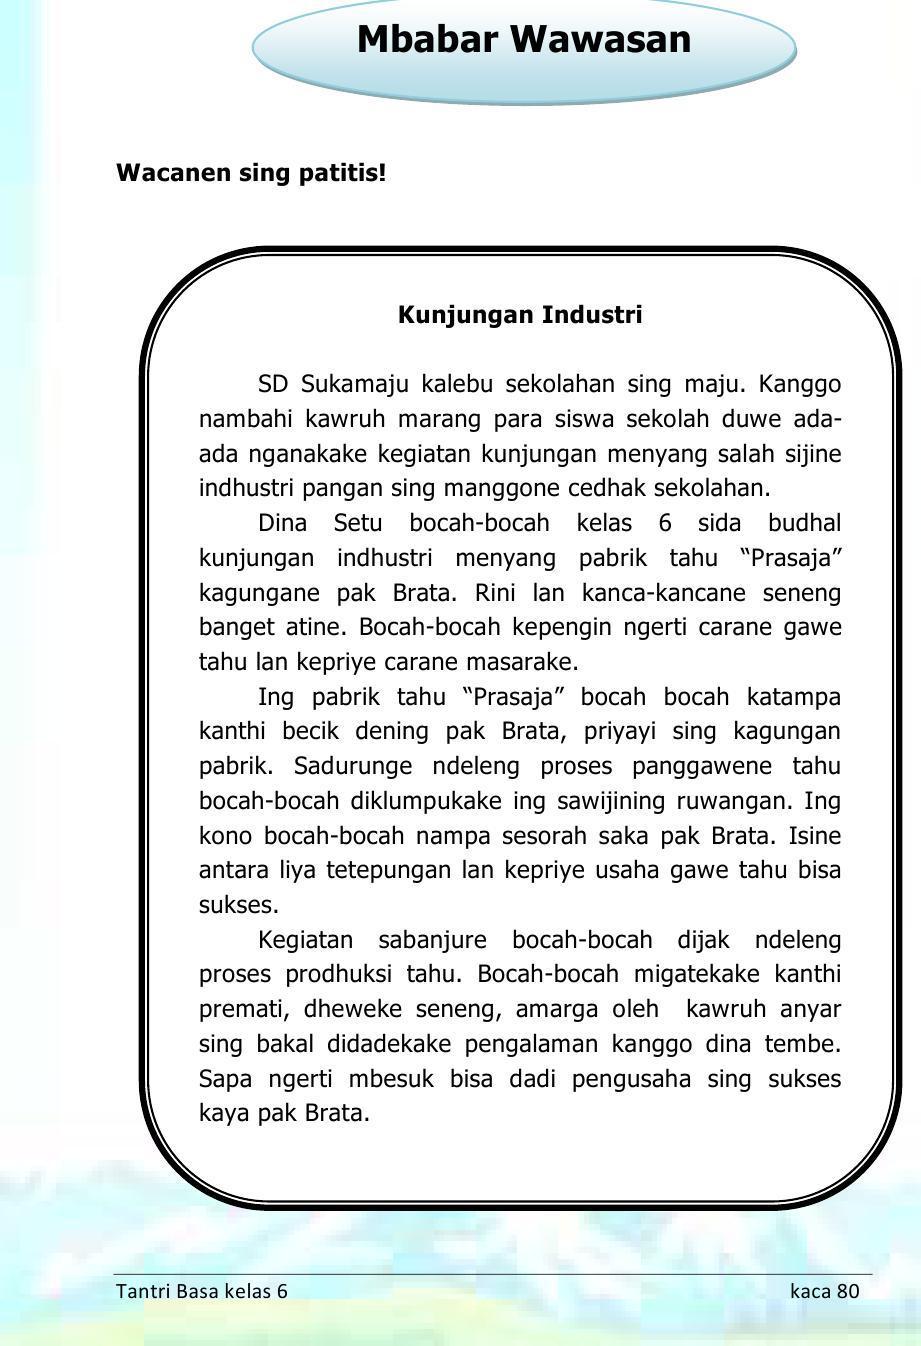 Buku Siswa Kelas 6 Bahasa Jawa Tantri Basa 2016 For Android Apk Download